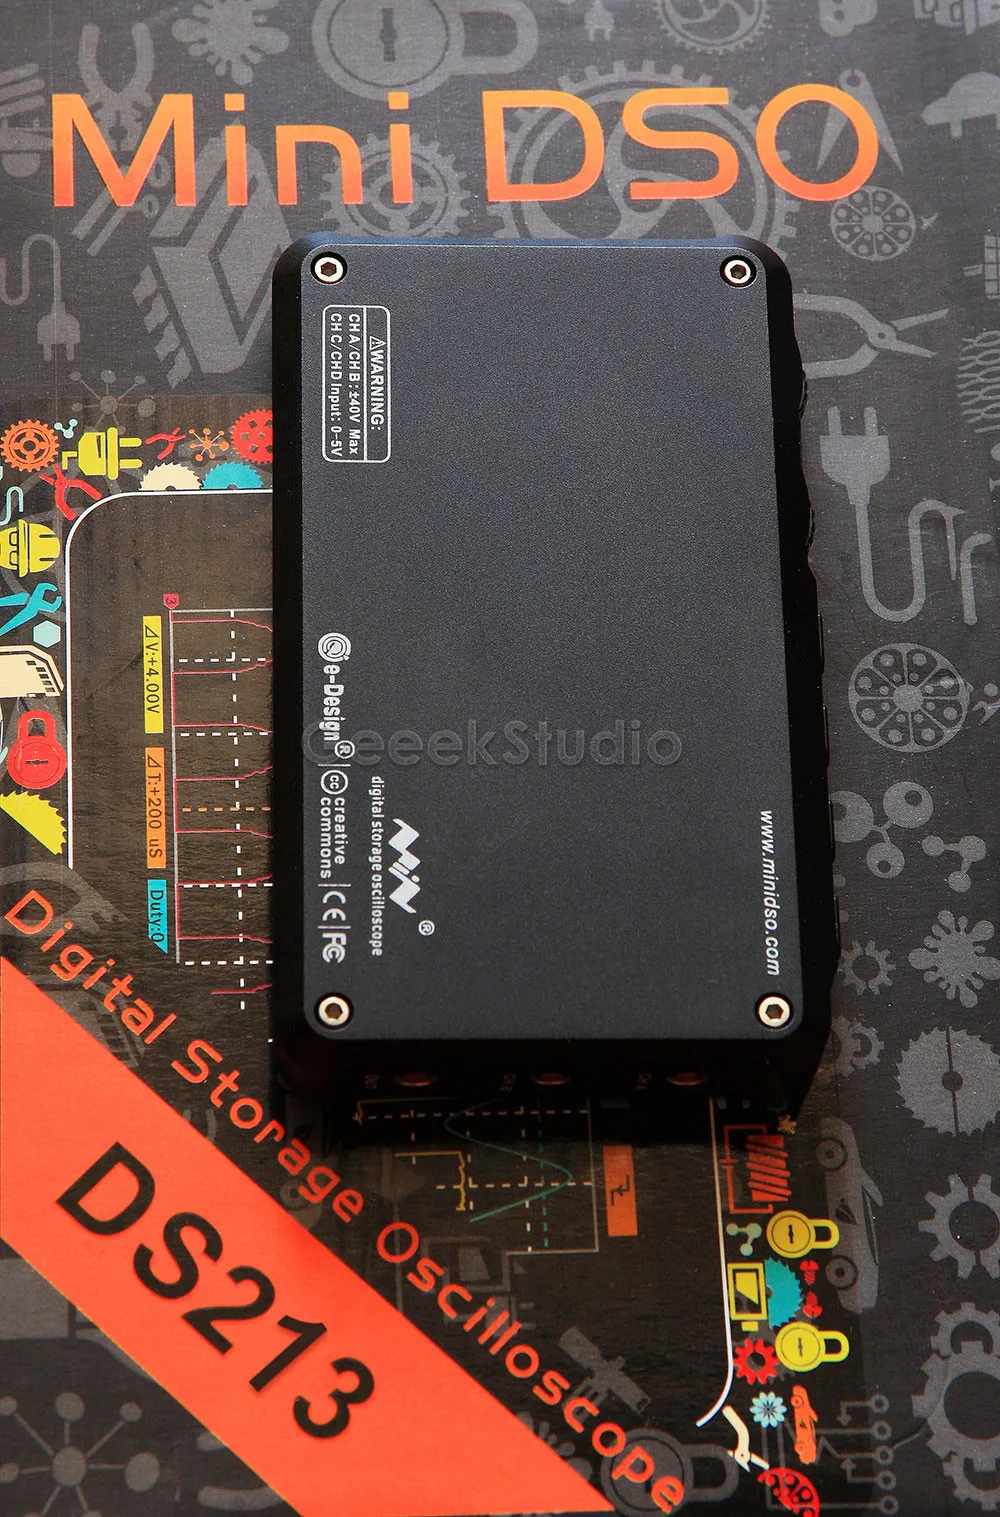 Мини DSO DS213 DSO213 цифровой запоминающий осциллограф Обновление от DS203 DSO203, с дополнительным силиконовой резины Защитный чехол